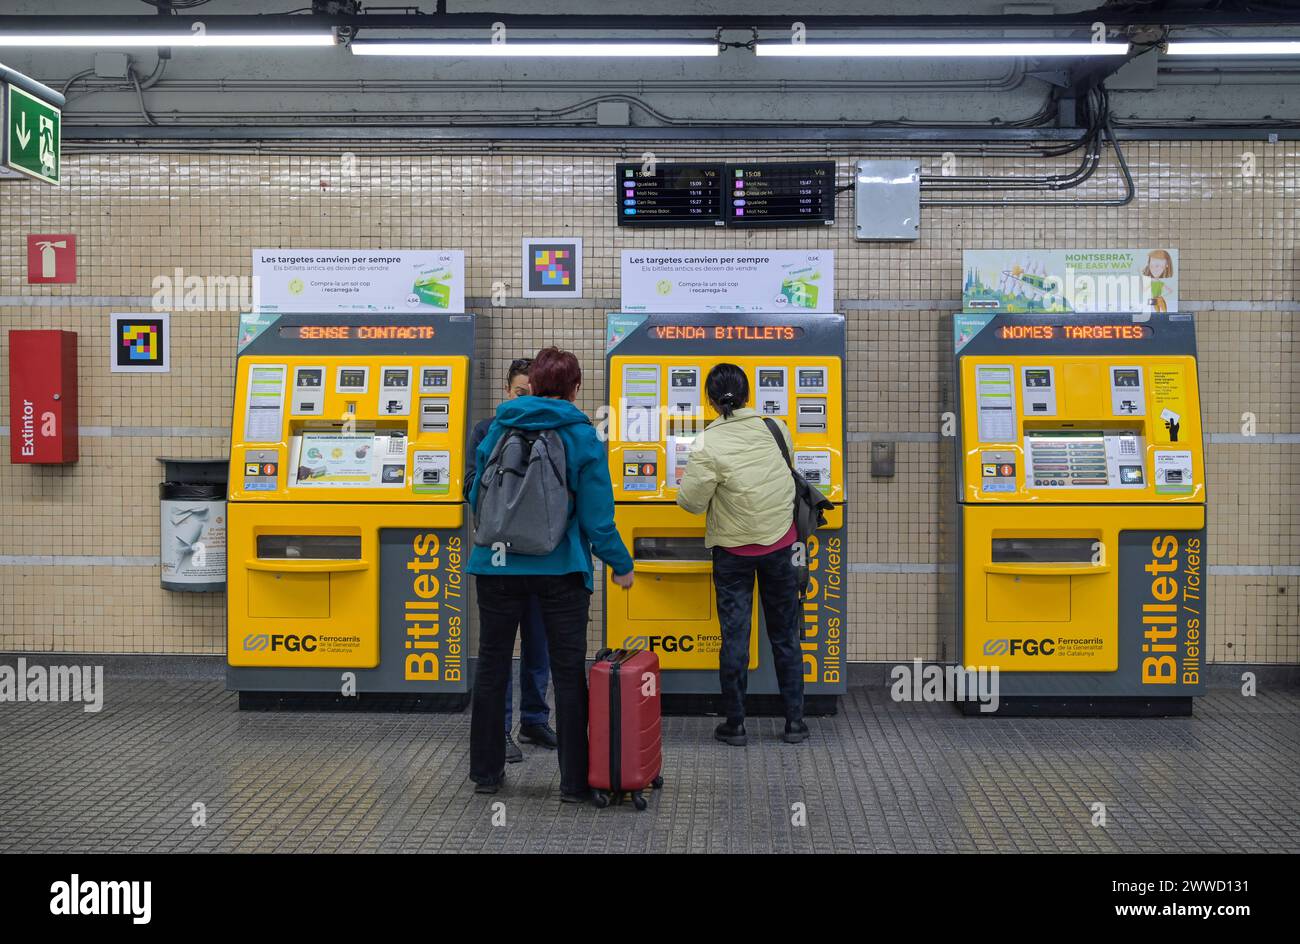 Fahrkartenautomat, Metro, Barcelona, Katalonien, Spanien Banque D'Images